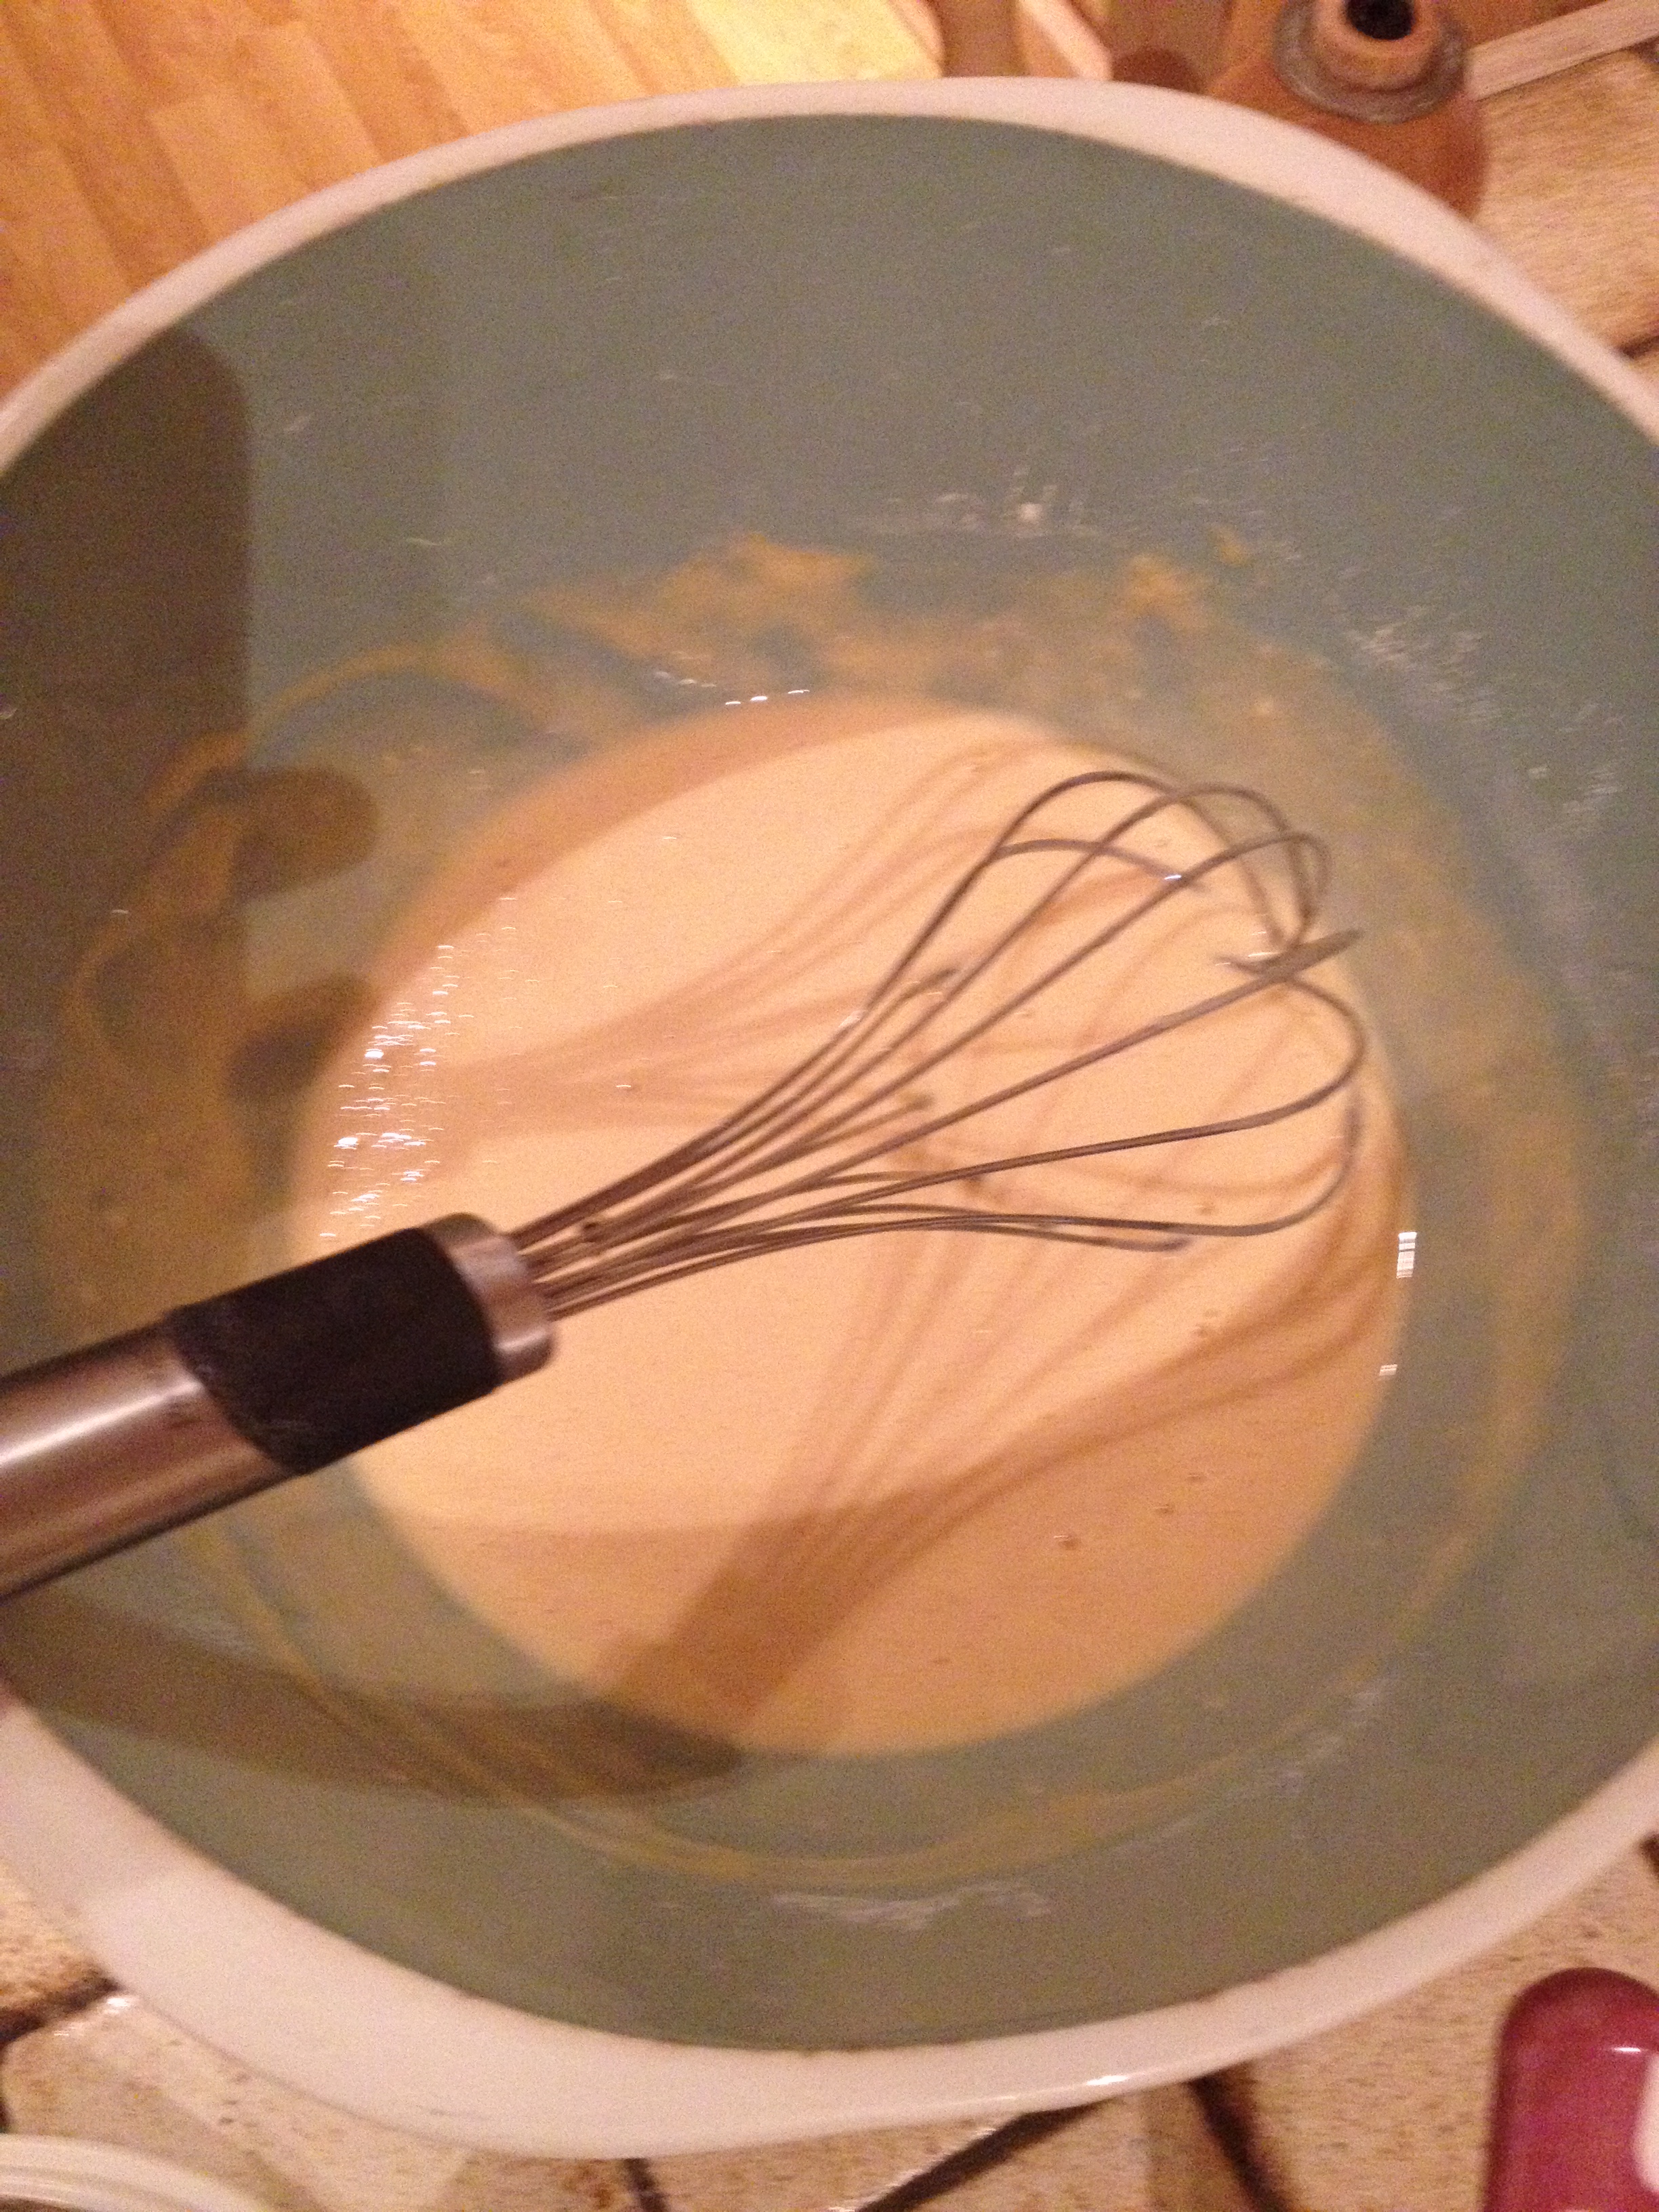 pancake batter mixed